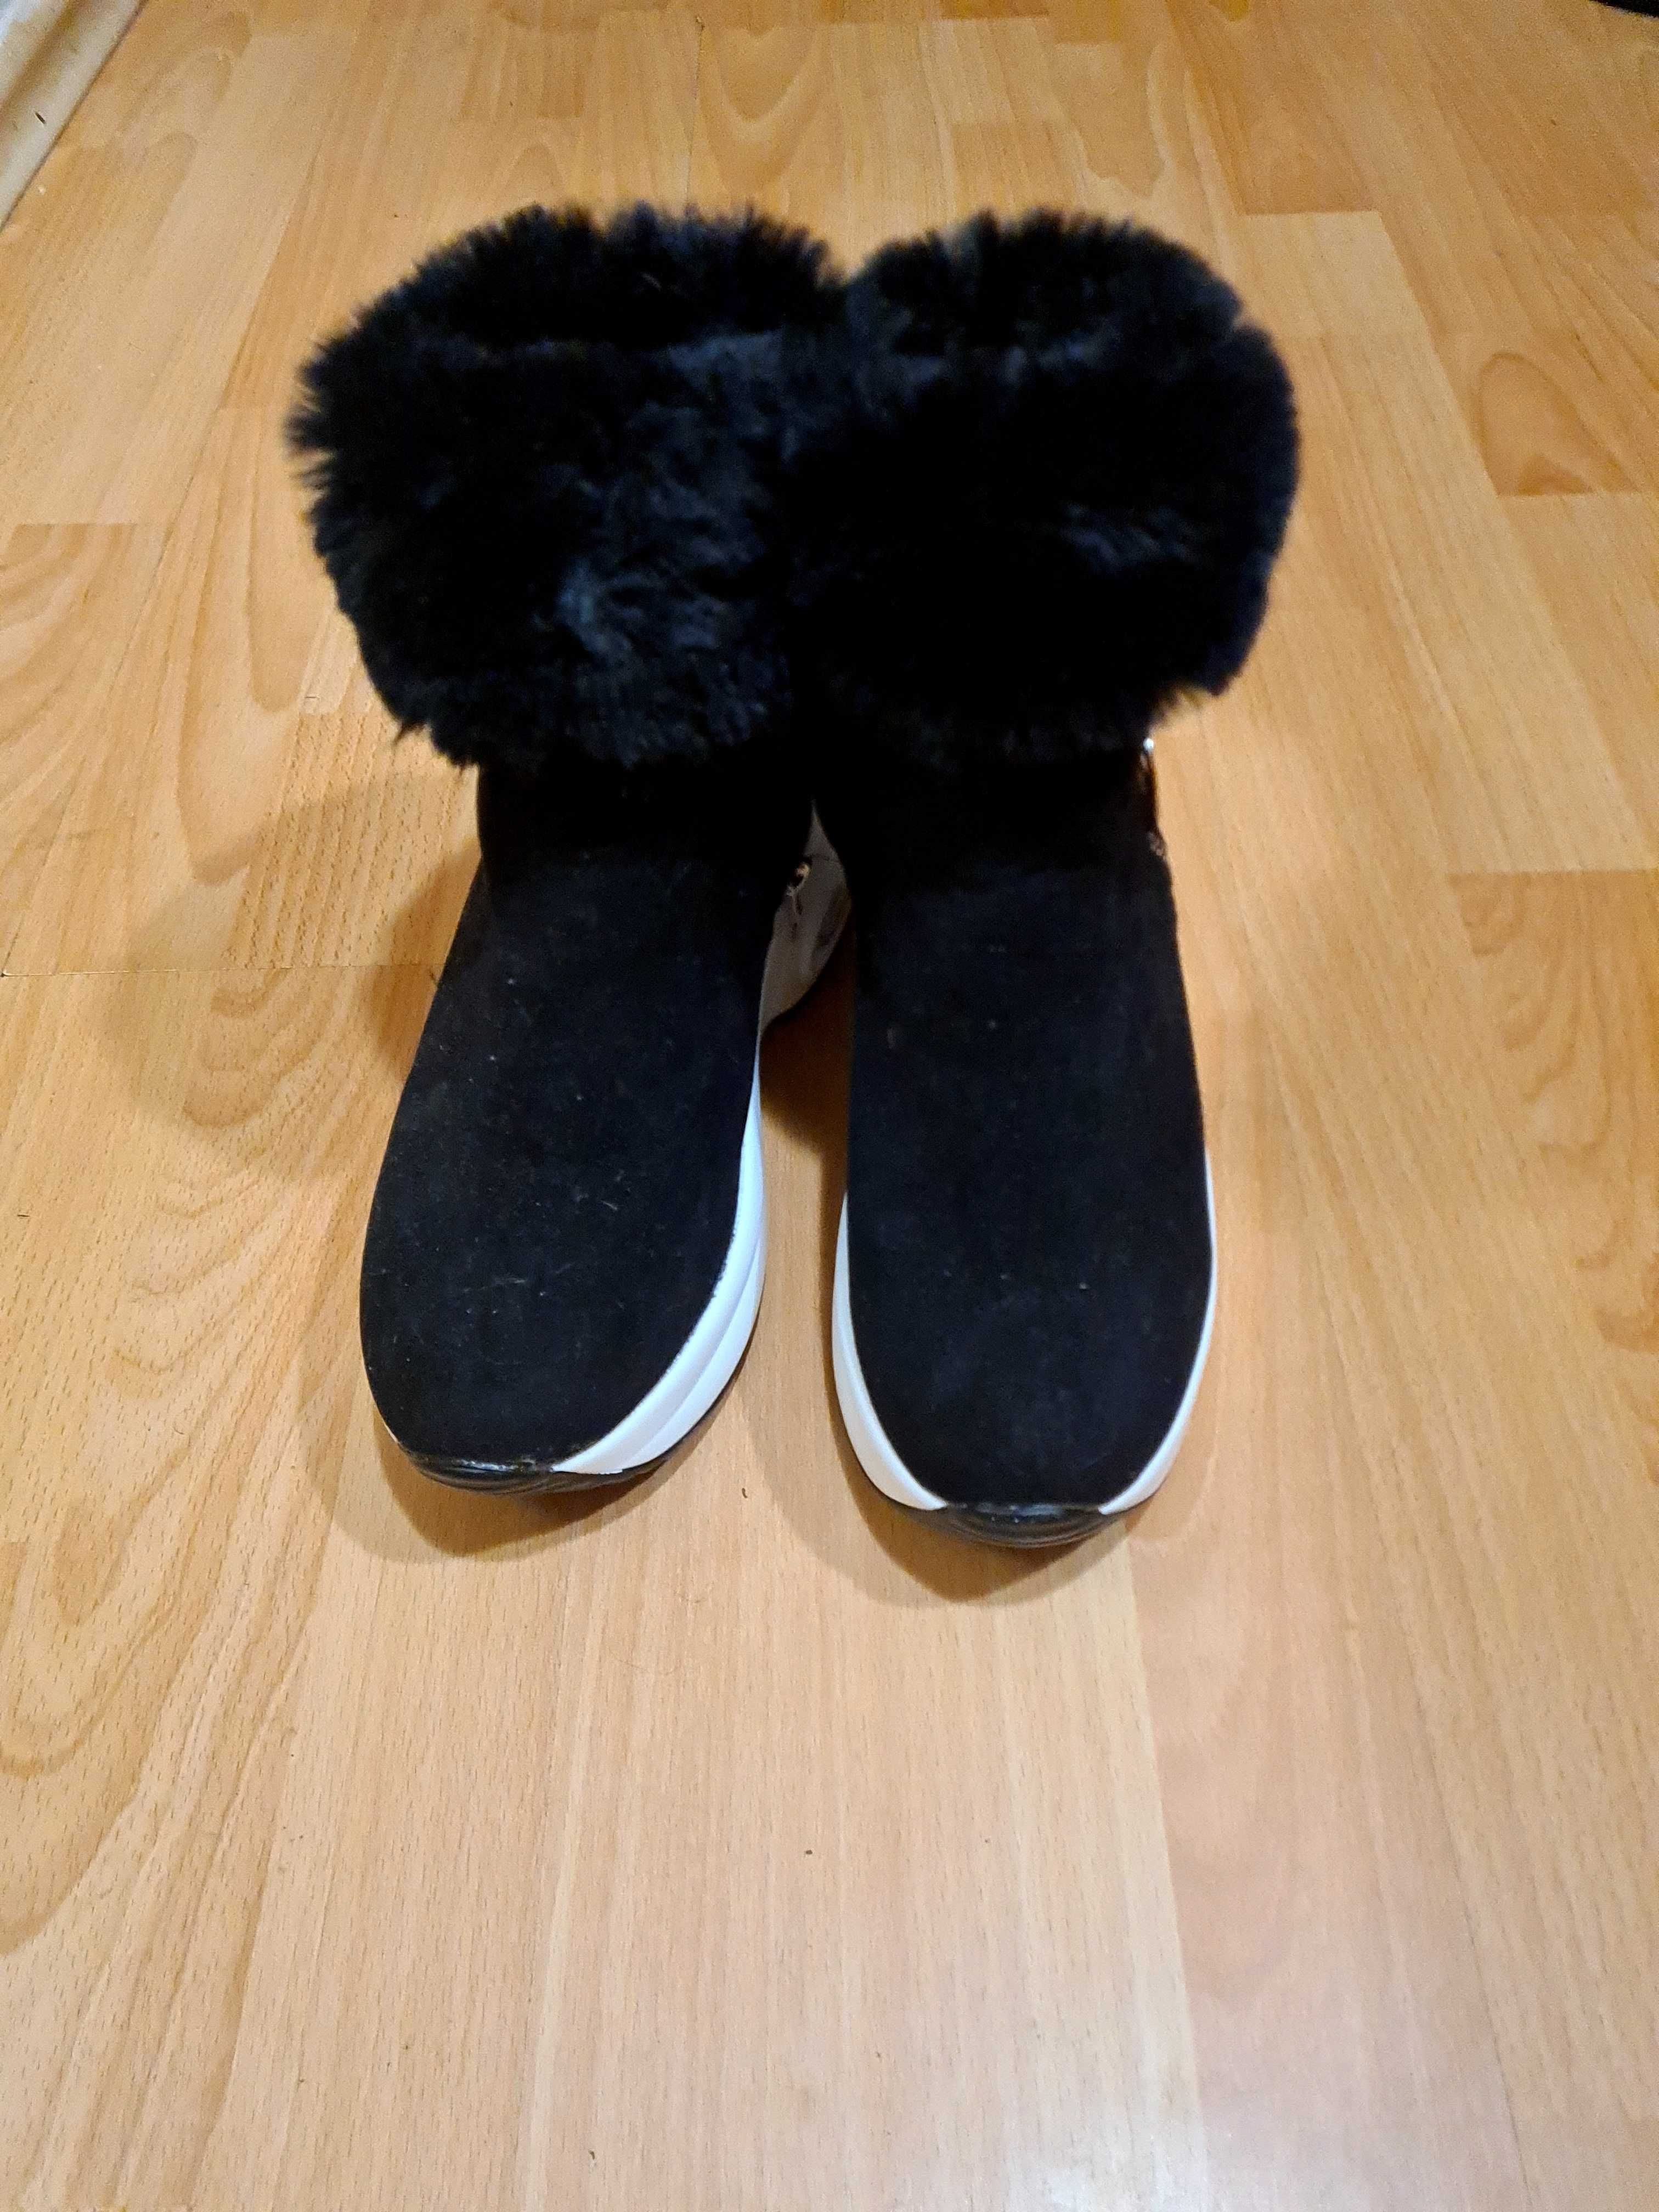 Black Shoes- boots